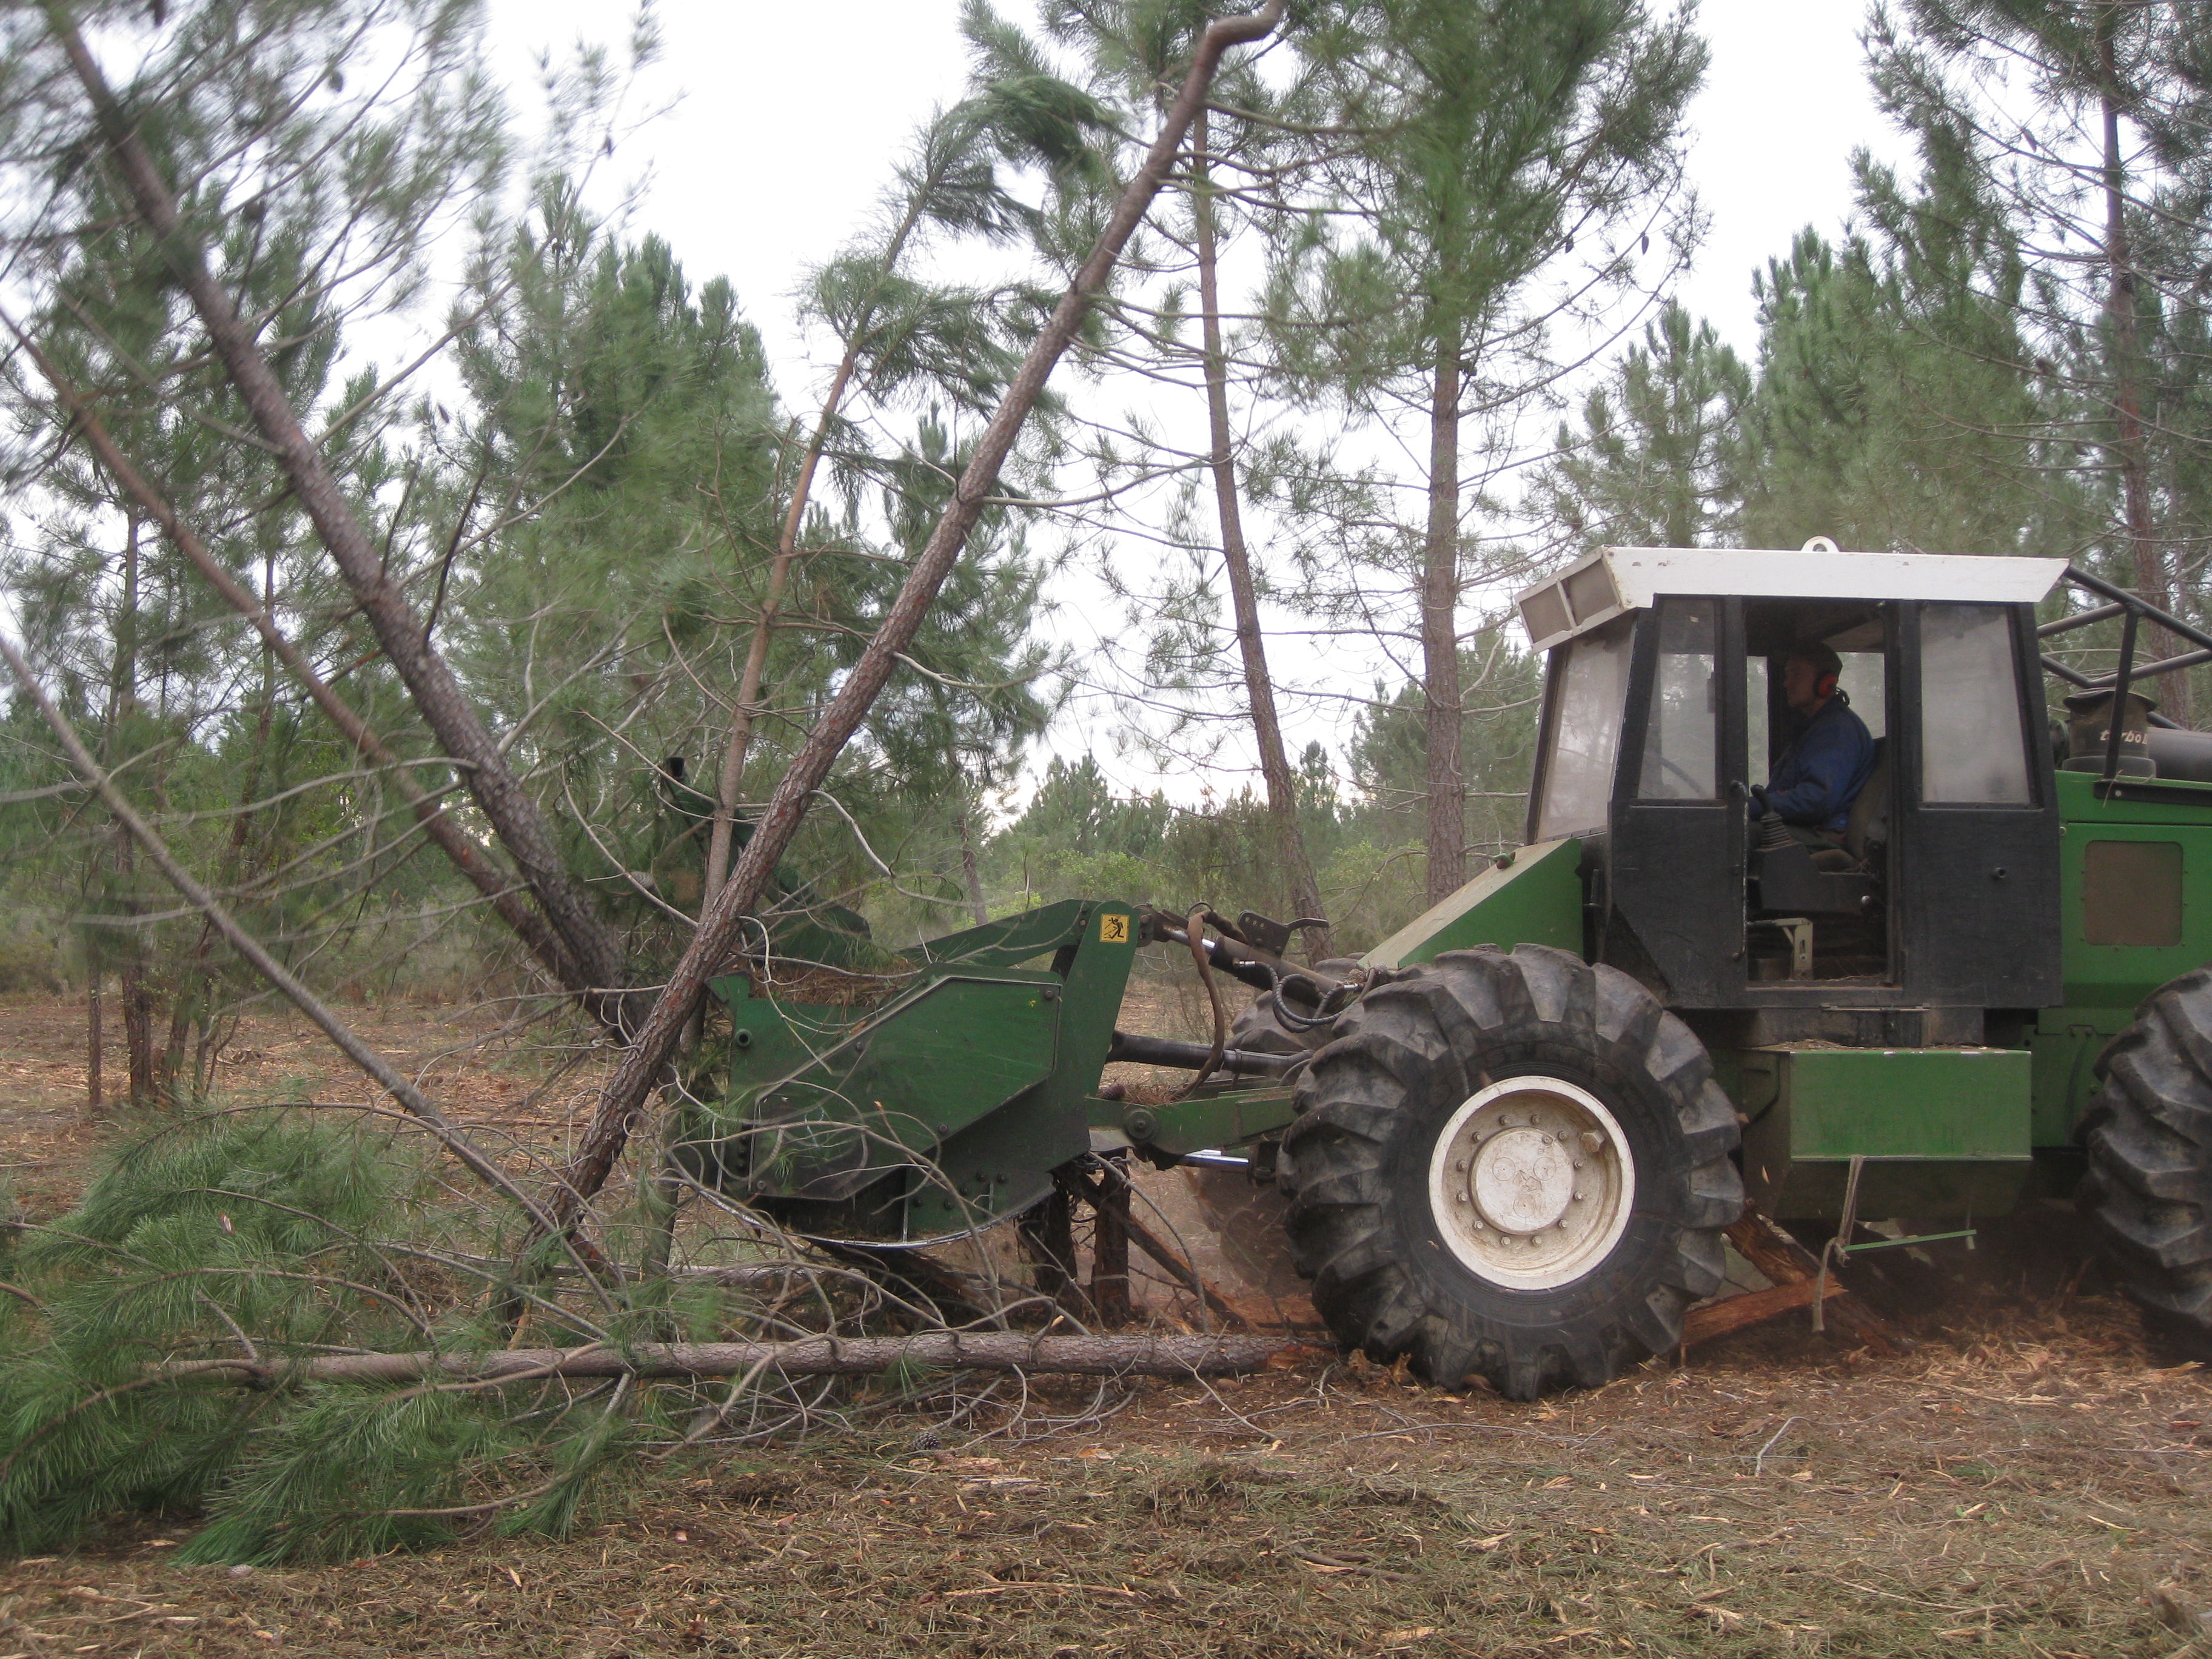 Le broyeur marteau une mécanisation indispensable pour traiter les 5 hectares de terrain communal actuellement travaillés. (Photo DR).